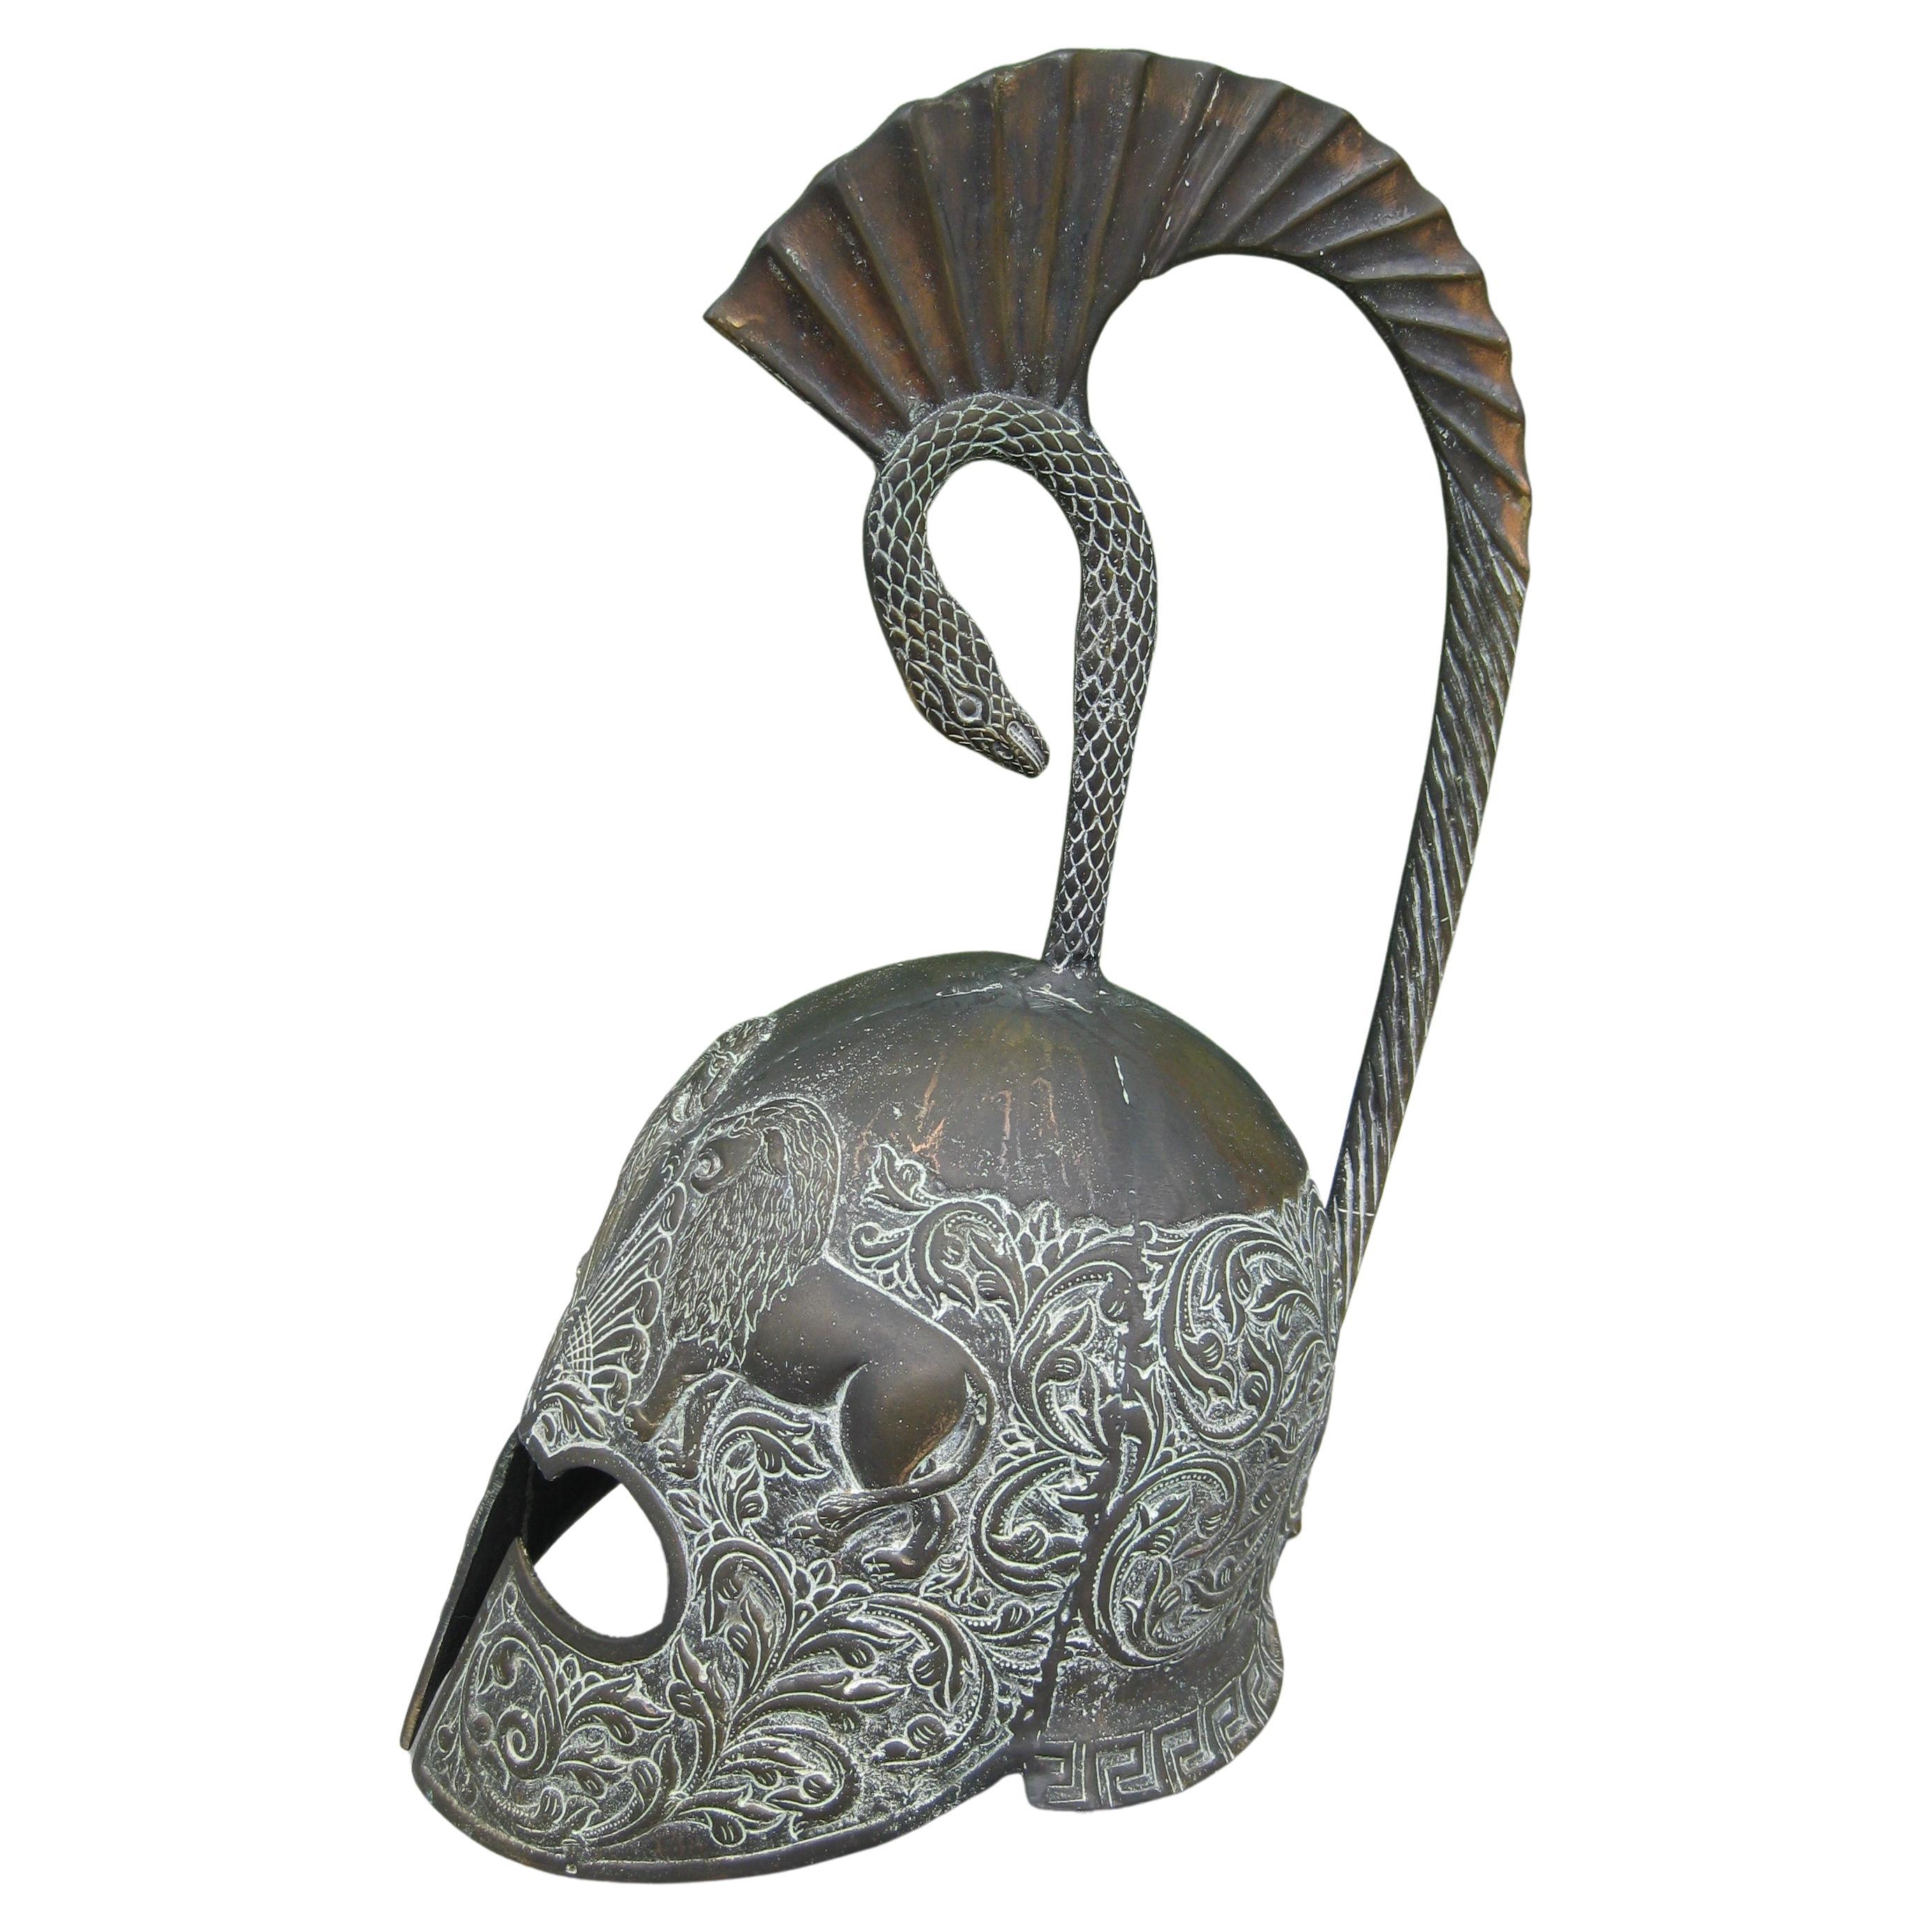 Modèle de casque de présentation décoratif grec vintage en bronze fait main, grandeur nature, de style romain